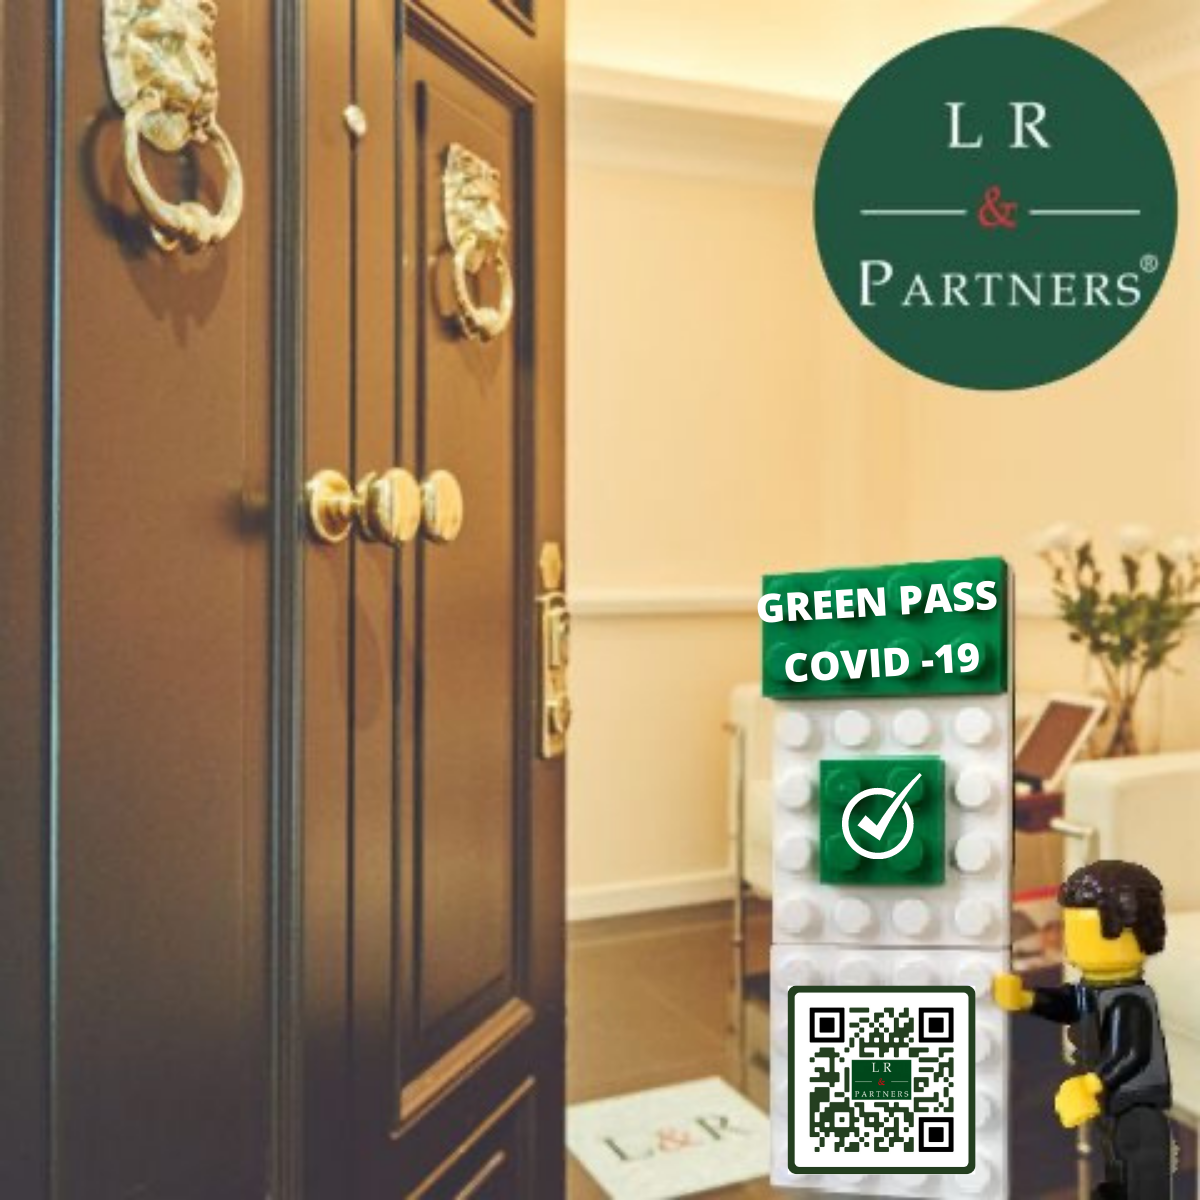 Green Pass per i lavoratori: quel che c’è da sapere - Parere LR & Partners